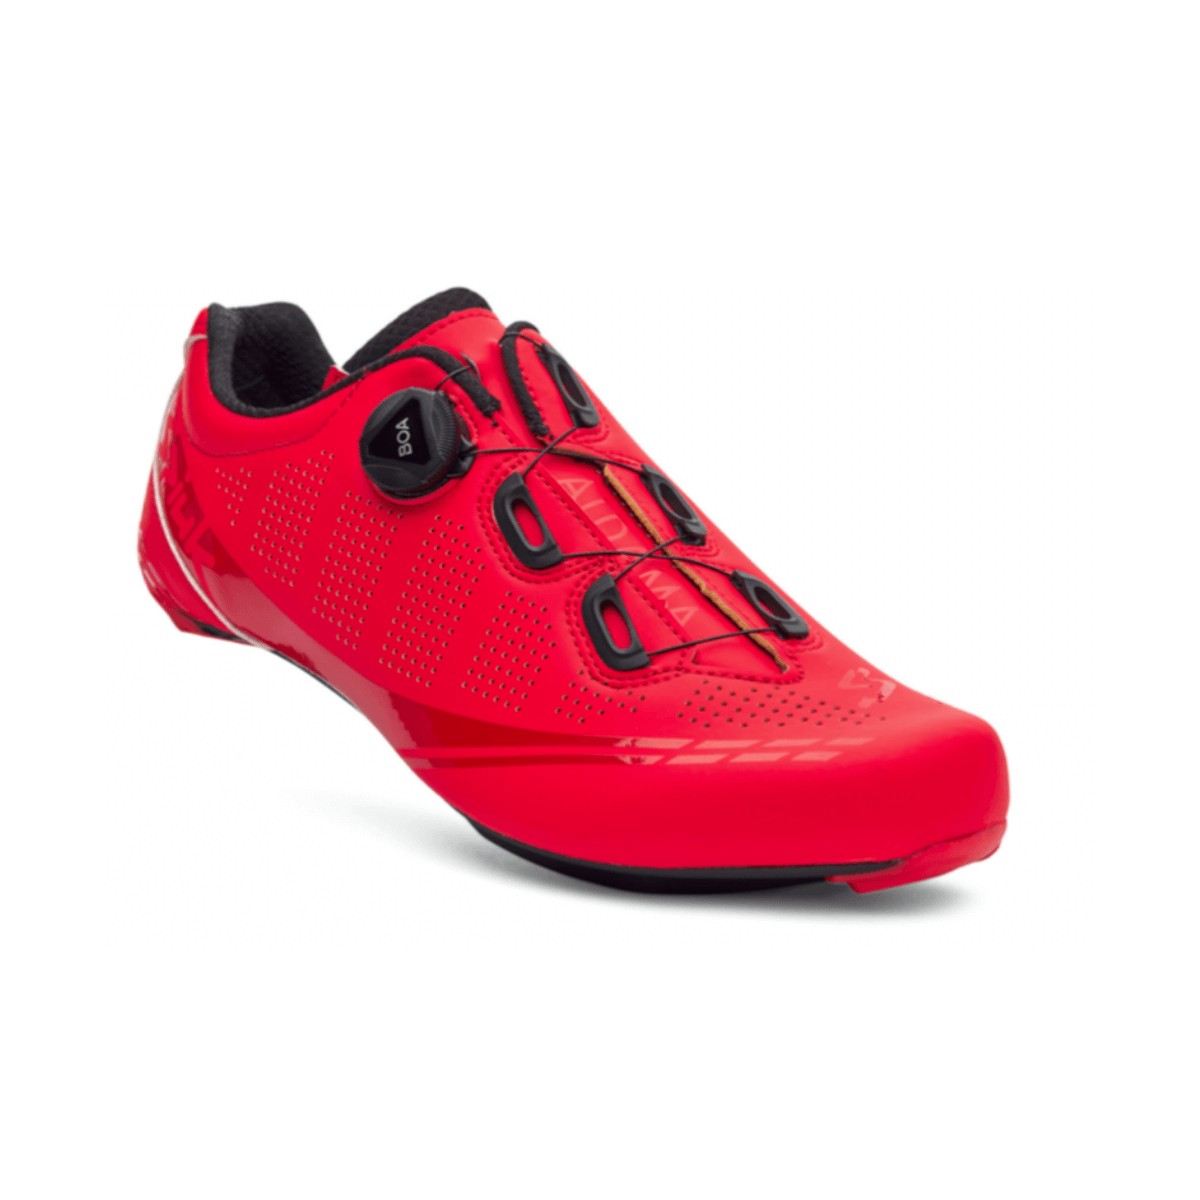 Spiuk Aldama Road Shoes Matte Red, Size 42 - EUR